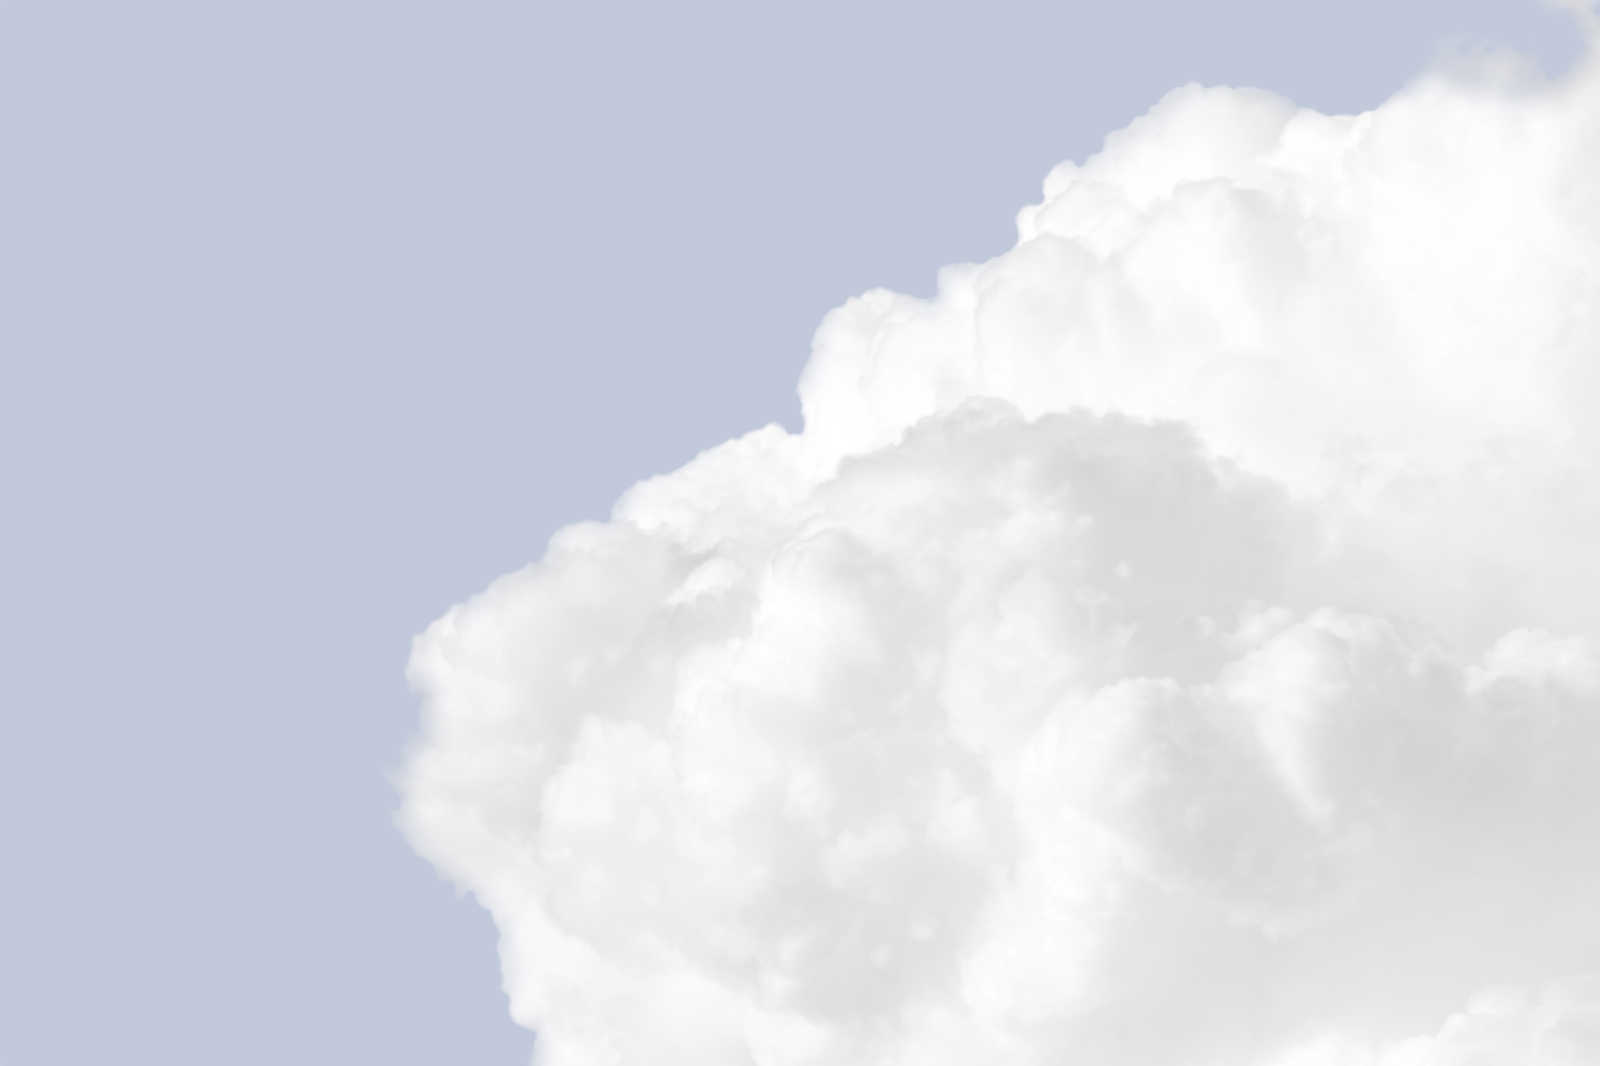             Leinwandbild mit weiße Wolken am hellen blauen Himmel – 0,90 m x 0,60 m
        